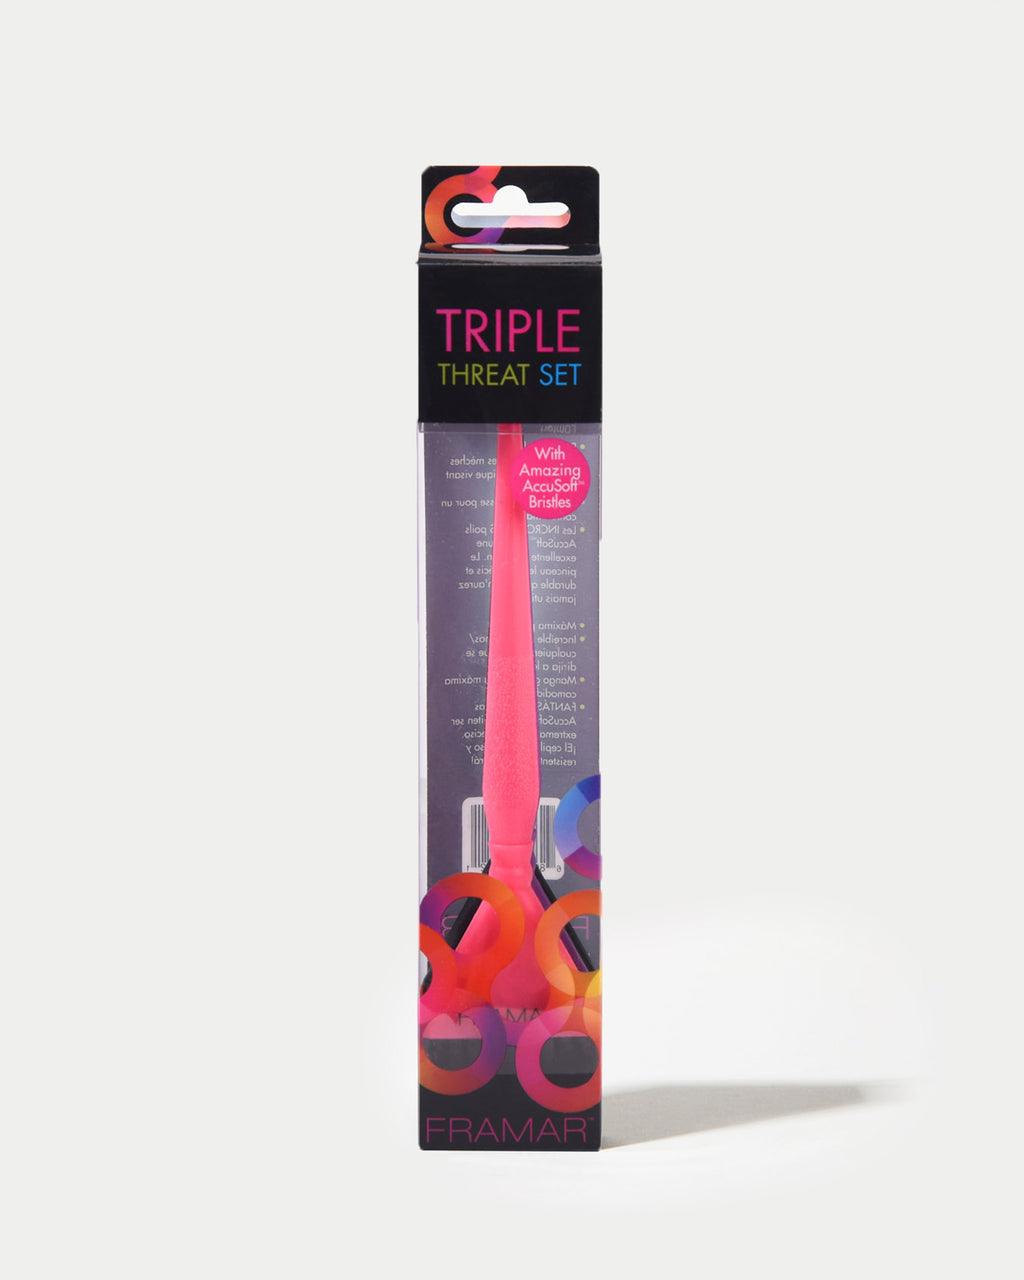 Schwarzkopf Framar Hair Color Tint Brush - RED you choose type